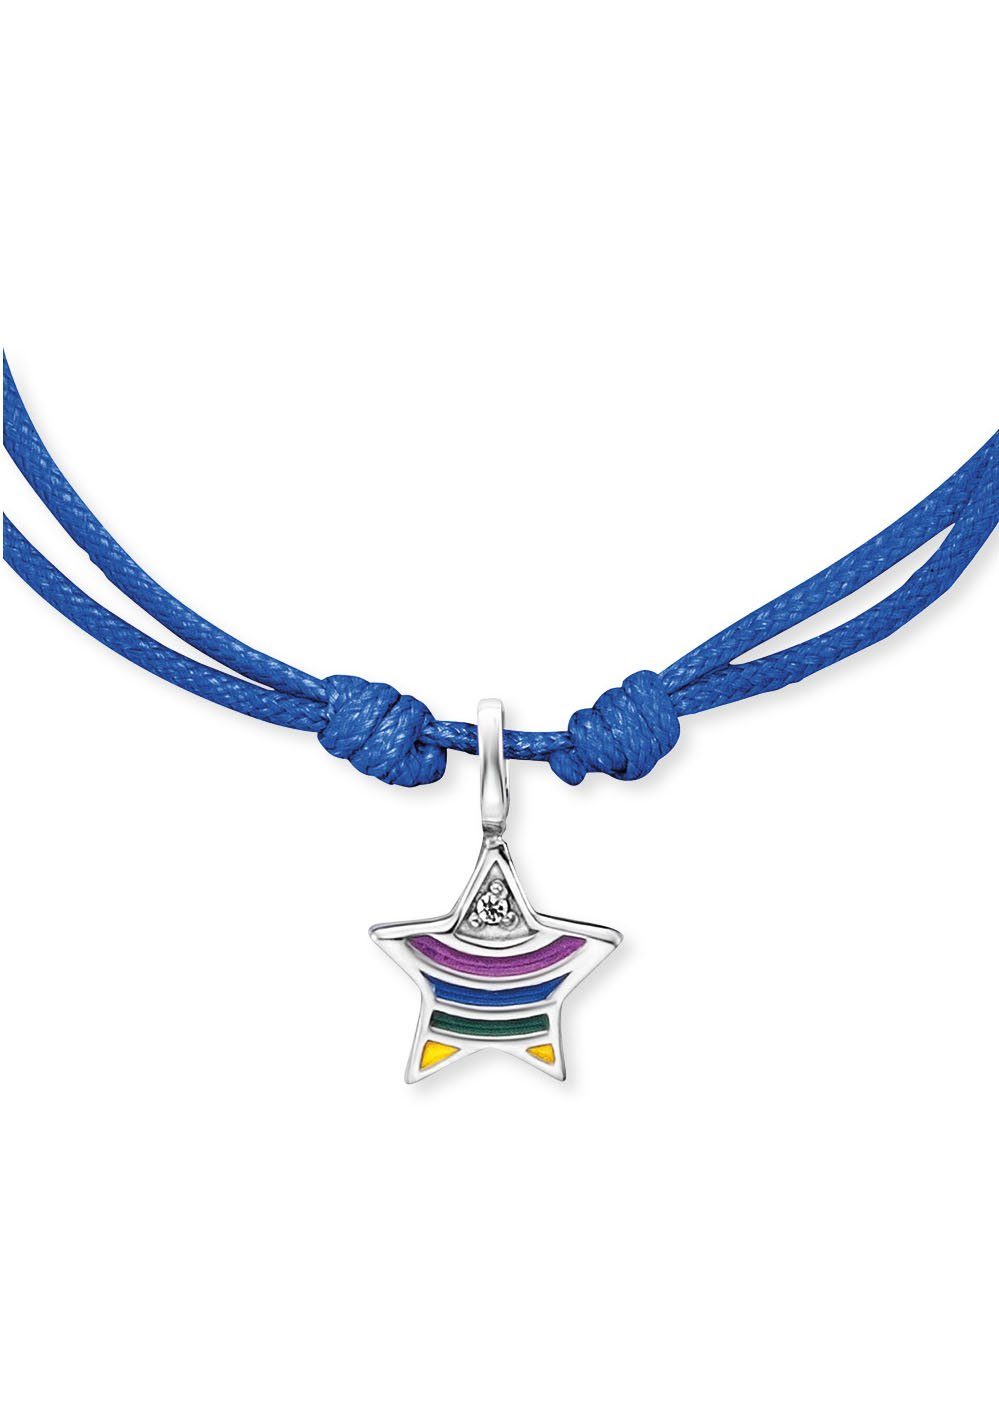 Herzengel Armband Stern rainbow, HEB-STAR-RAINBOW, mit Emaille